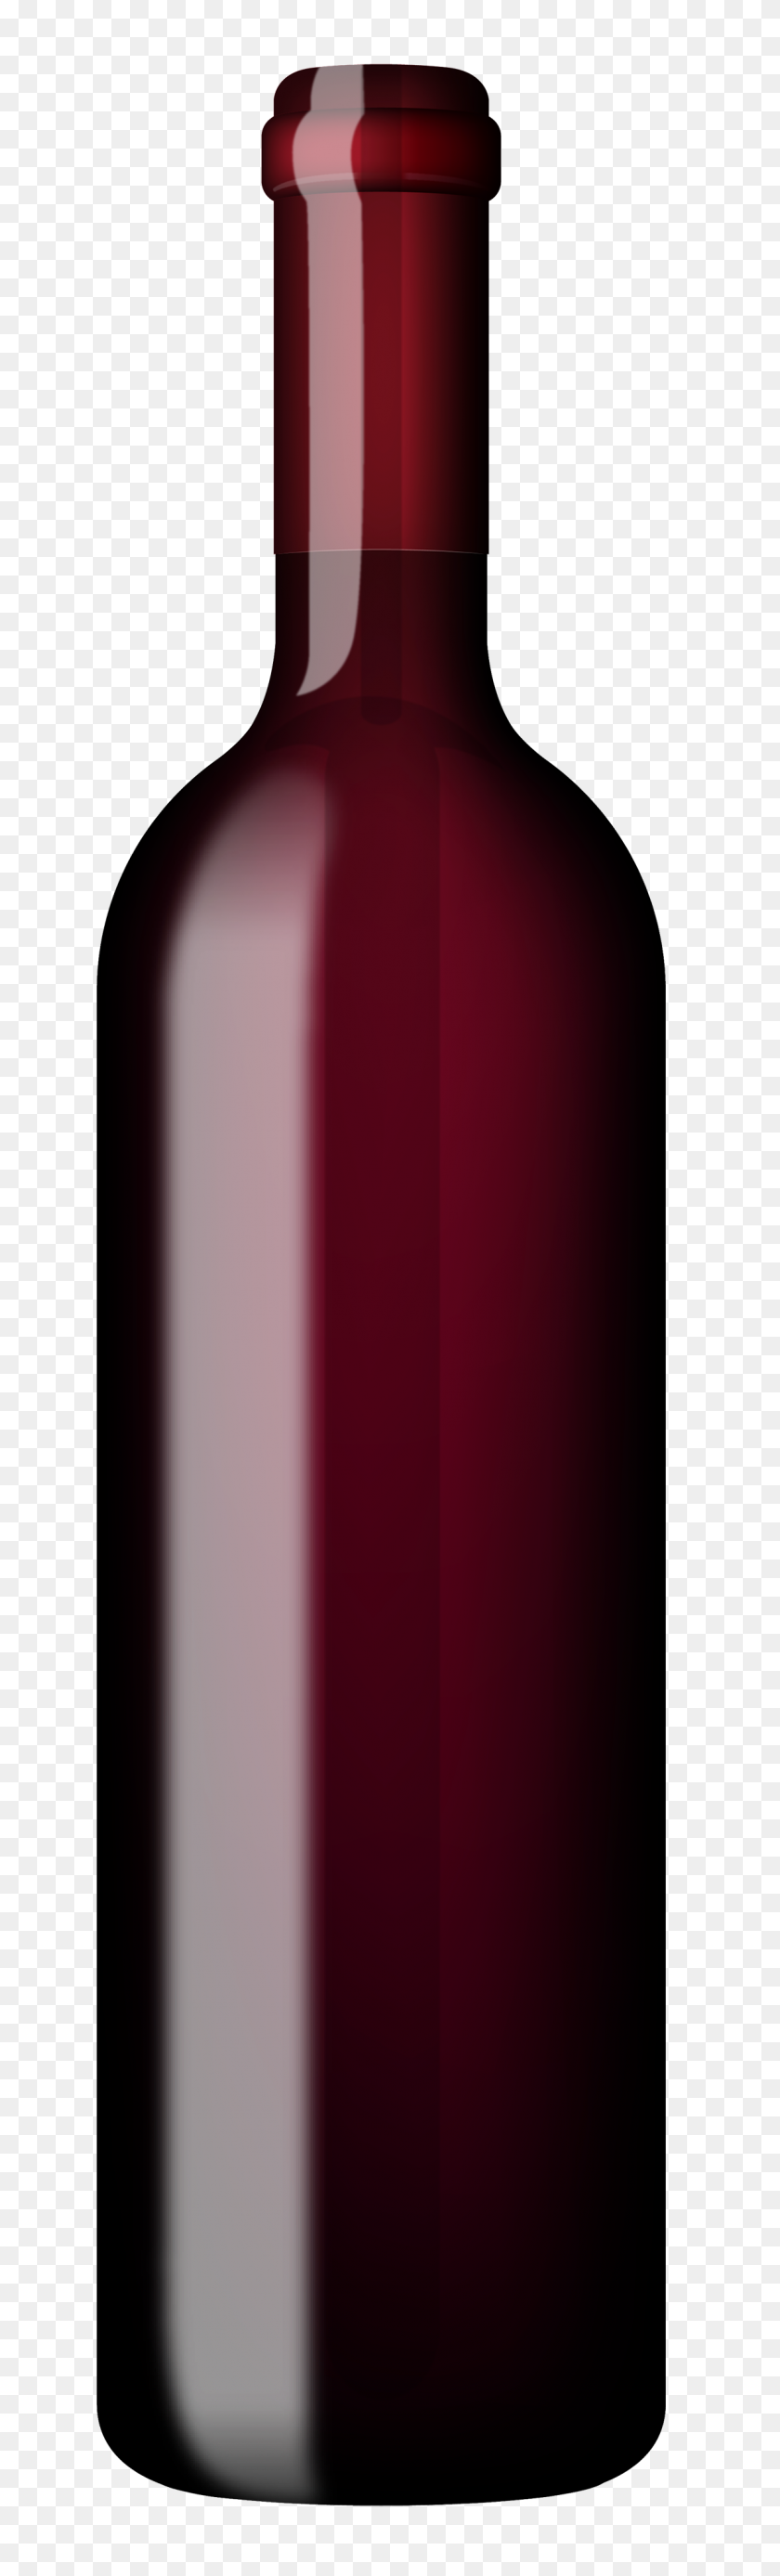 1149x4000 Wine Bottle Clipart Clip Art Images - Wine Glass Clipart